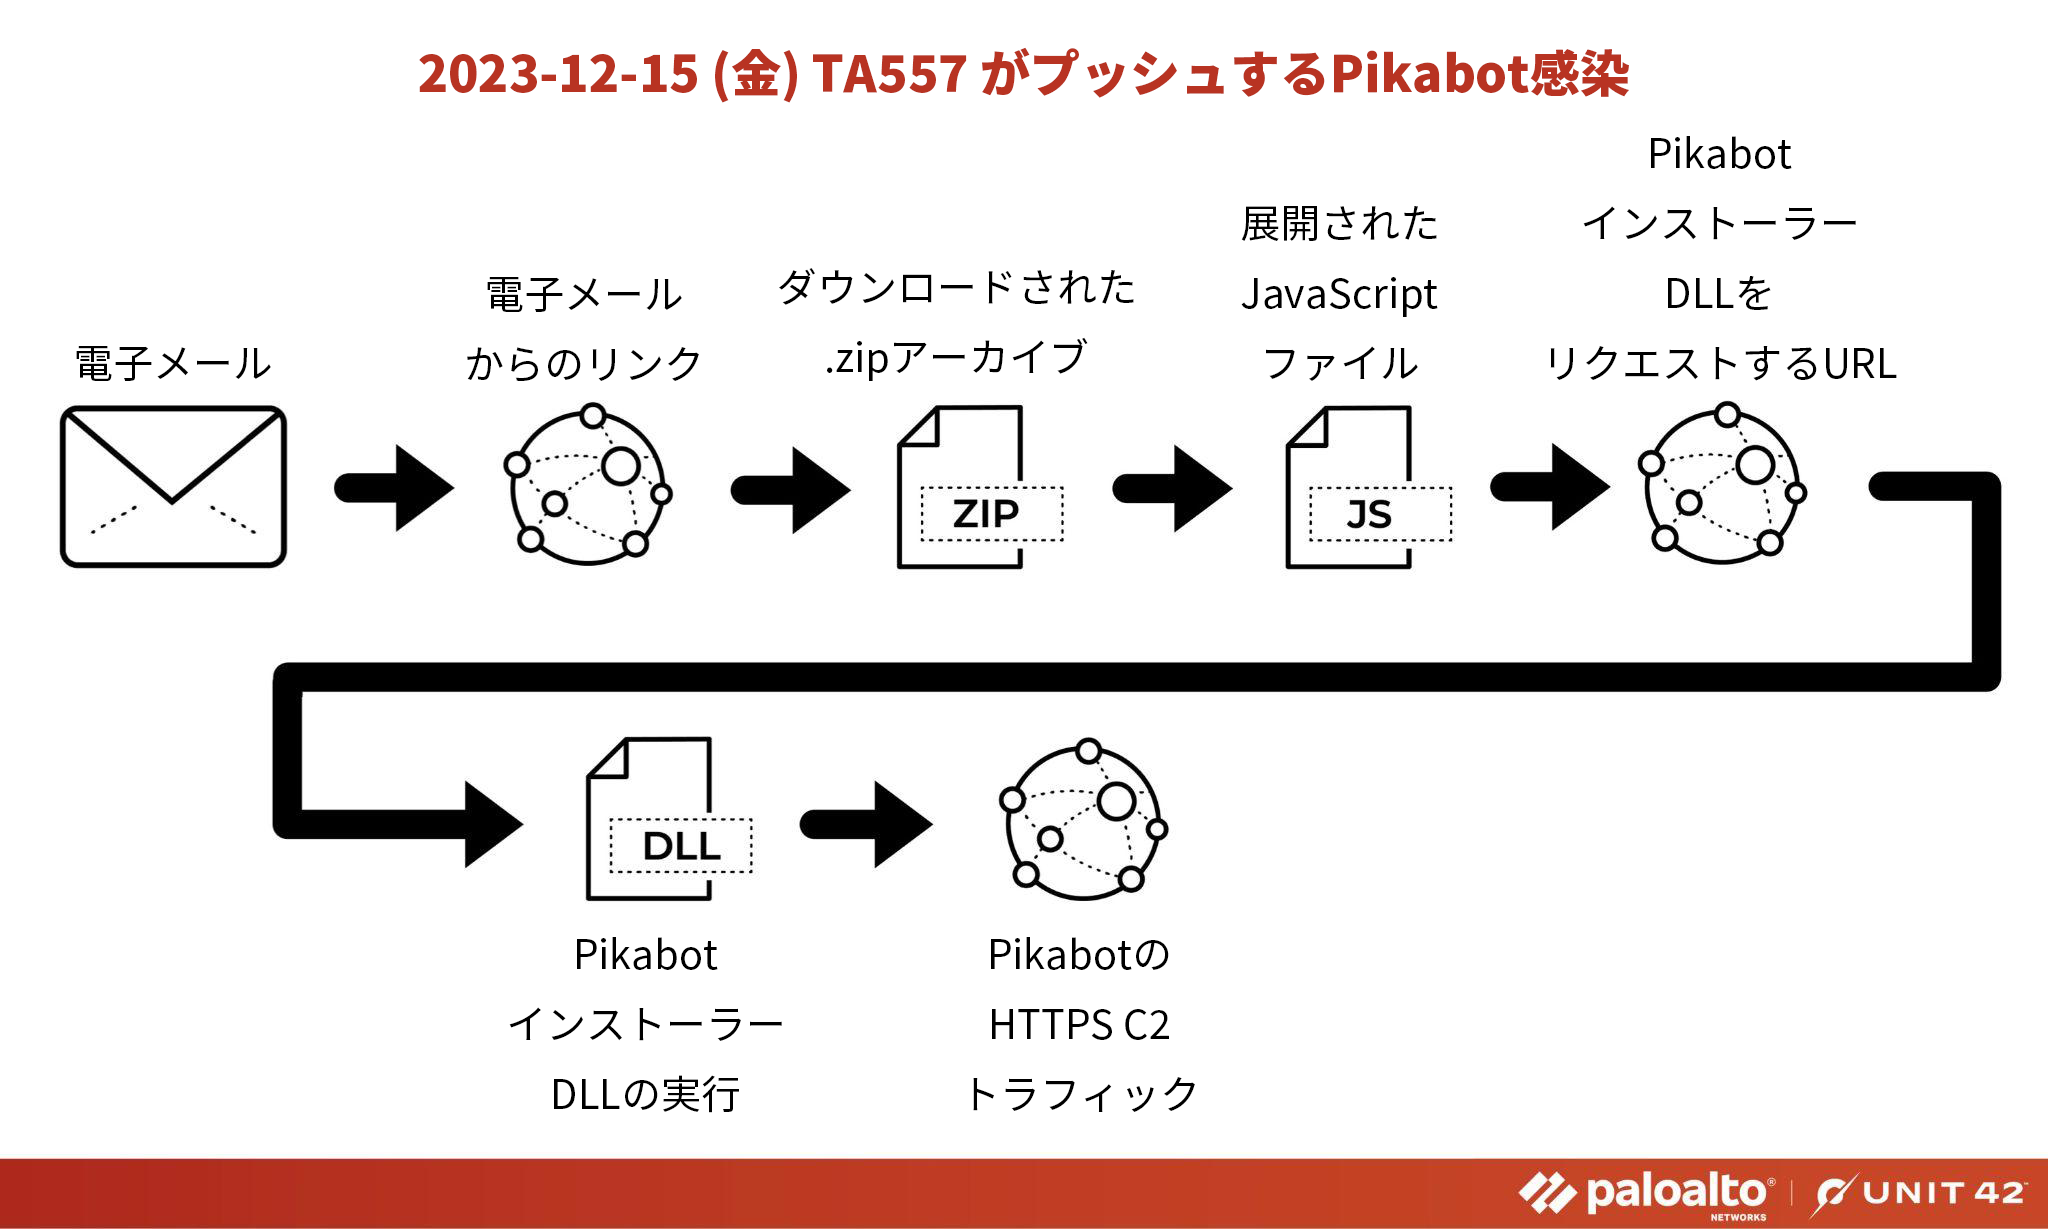 TA557 による Pikabot の感染チェーン: 電子メール > 電子メールからのリンク > ダウンロードされた .zip > 抽出された JavaScript ファイル > Pikabot インストーラー DLL の URL > Pikabot インストーラー DLL が実行される > Pikabot HTTPS C2 トラフィック